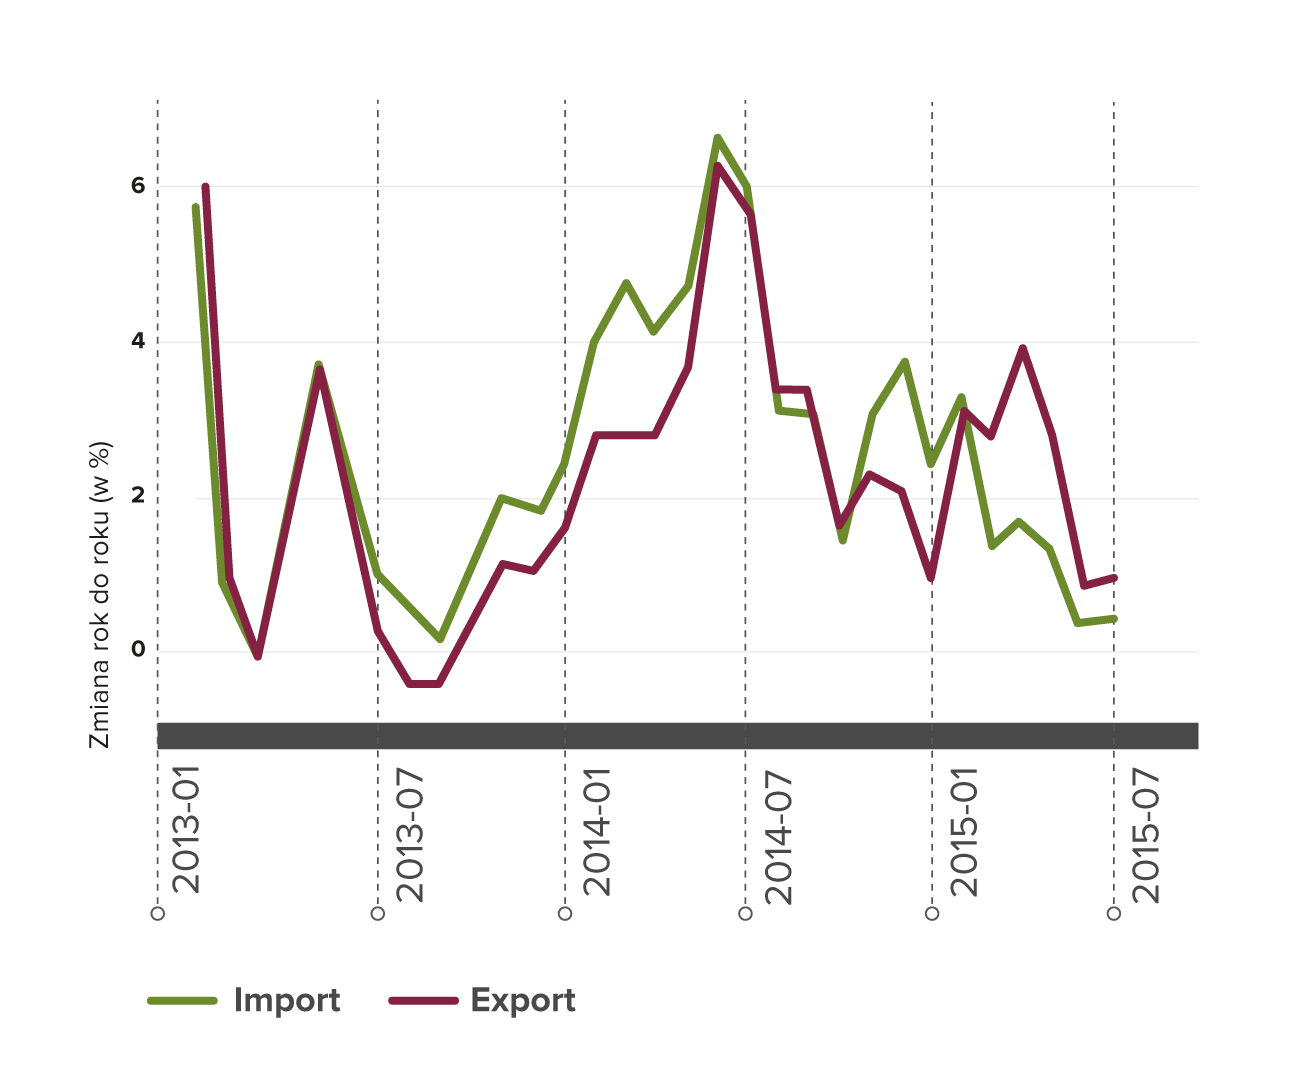 Indeks Złotego  Cinkciarz.pl wobec najważniejszych partnerów eksportowych i importowych (zmiana rok do roku).